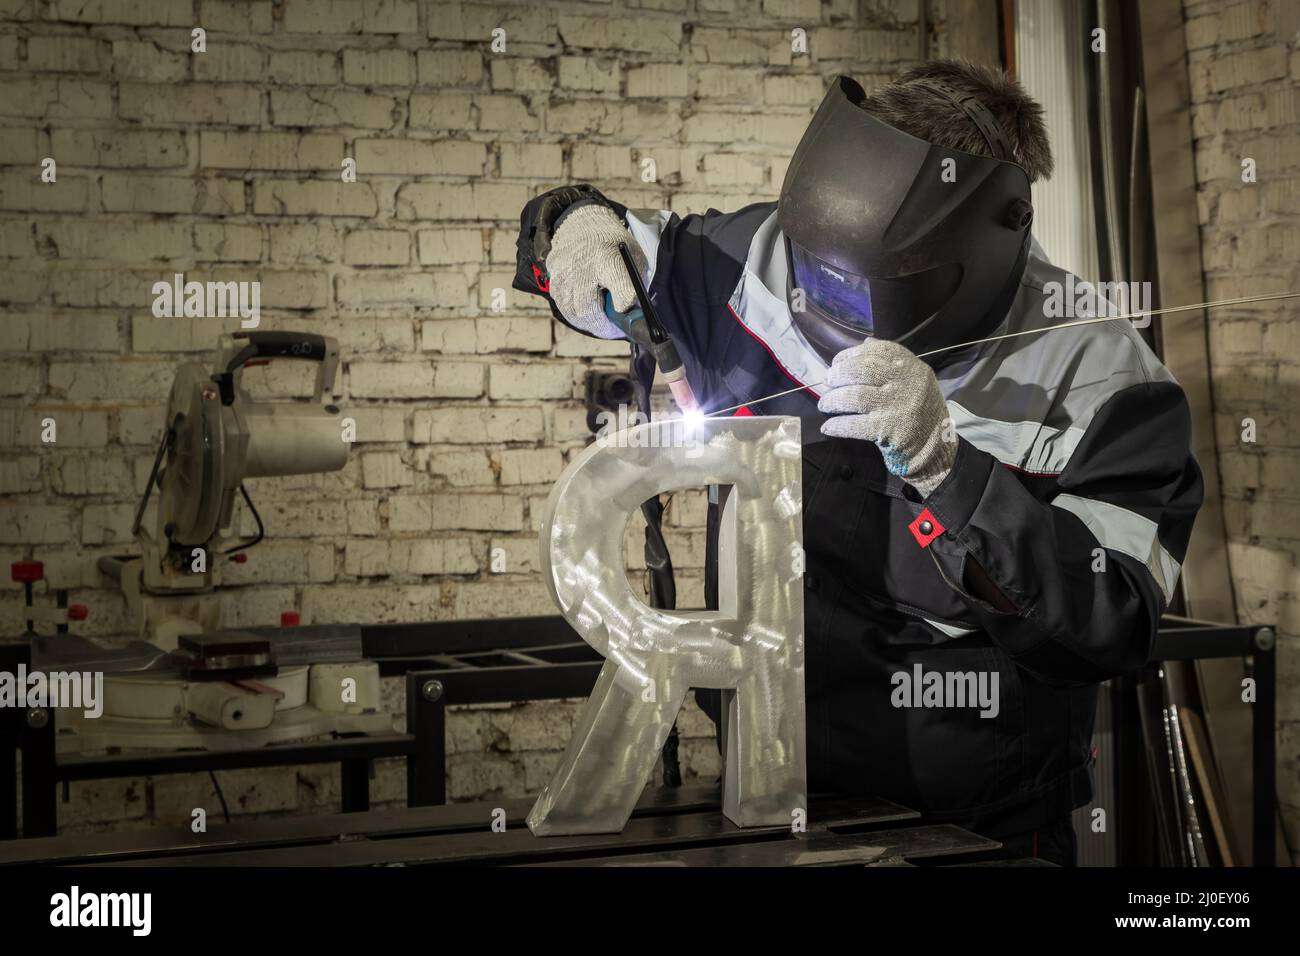 Soudeur soudant une pièce métallique dans un environnement industriel, portant un équipement de protection standard. Banque D'Images